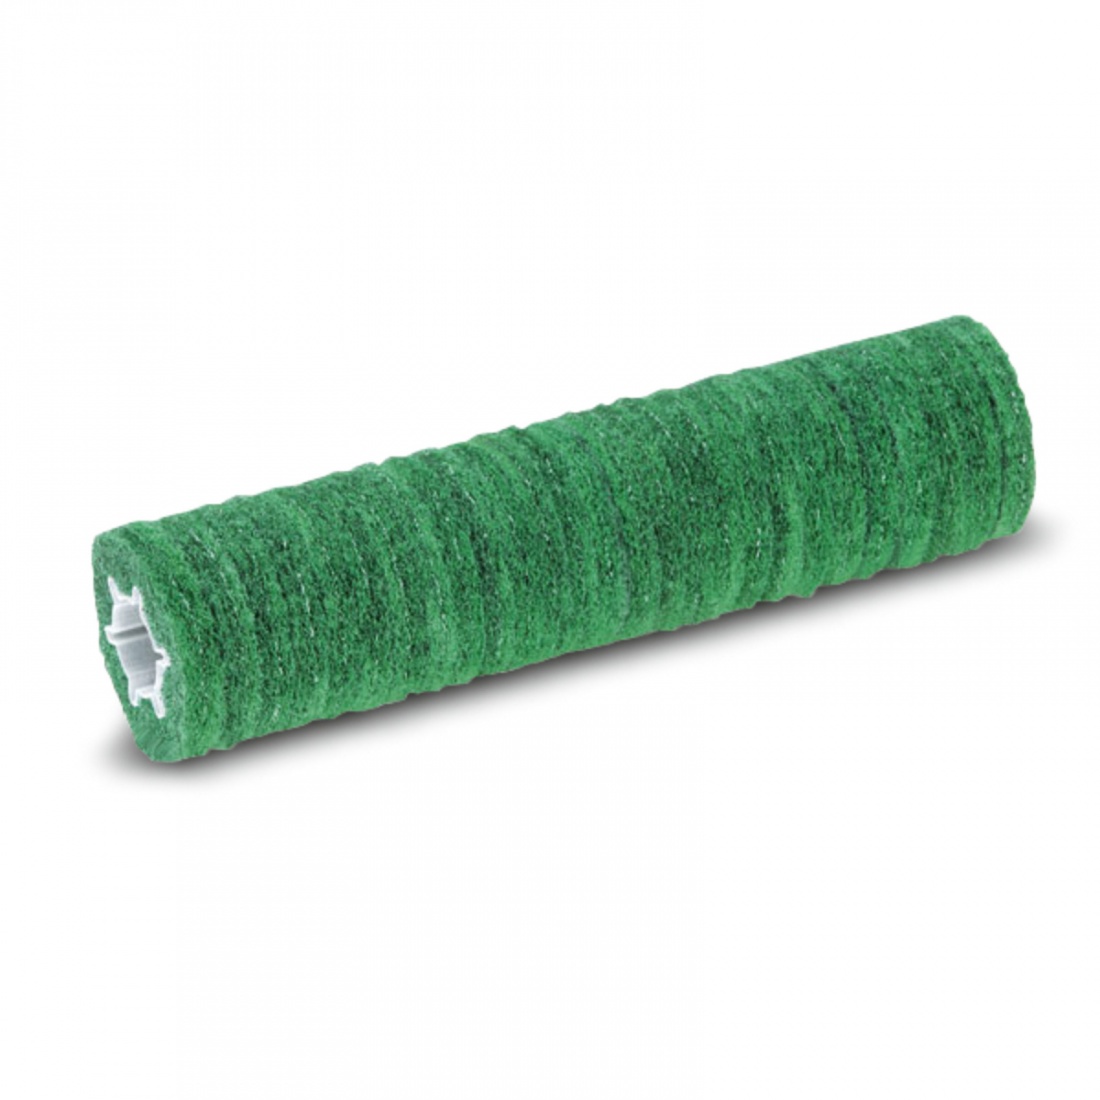 Втулка с роликовыми падами, жесткий, зеленый, 530 mm